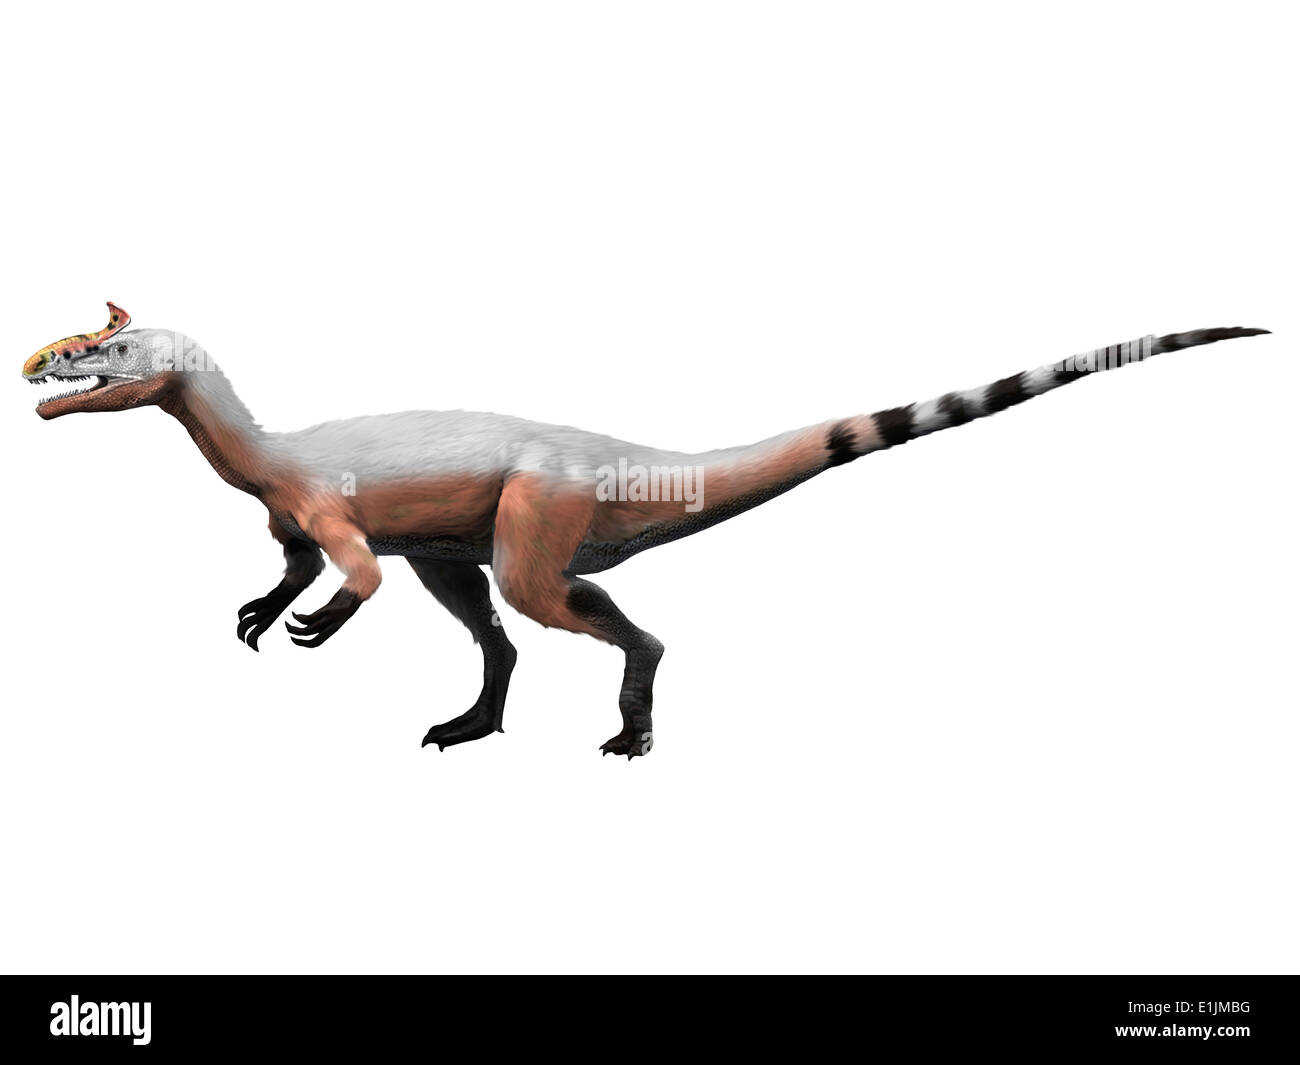 Cryolophosaurus dinosaur, white background. Stock Photo